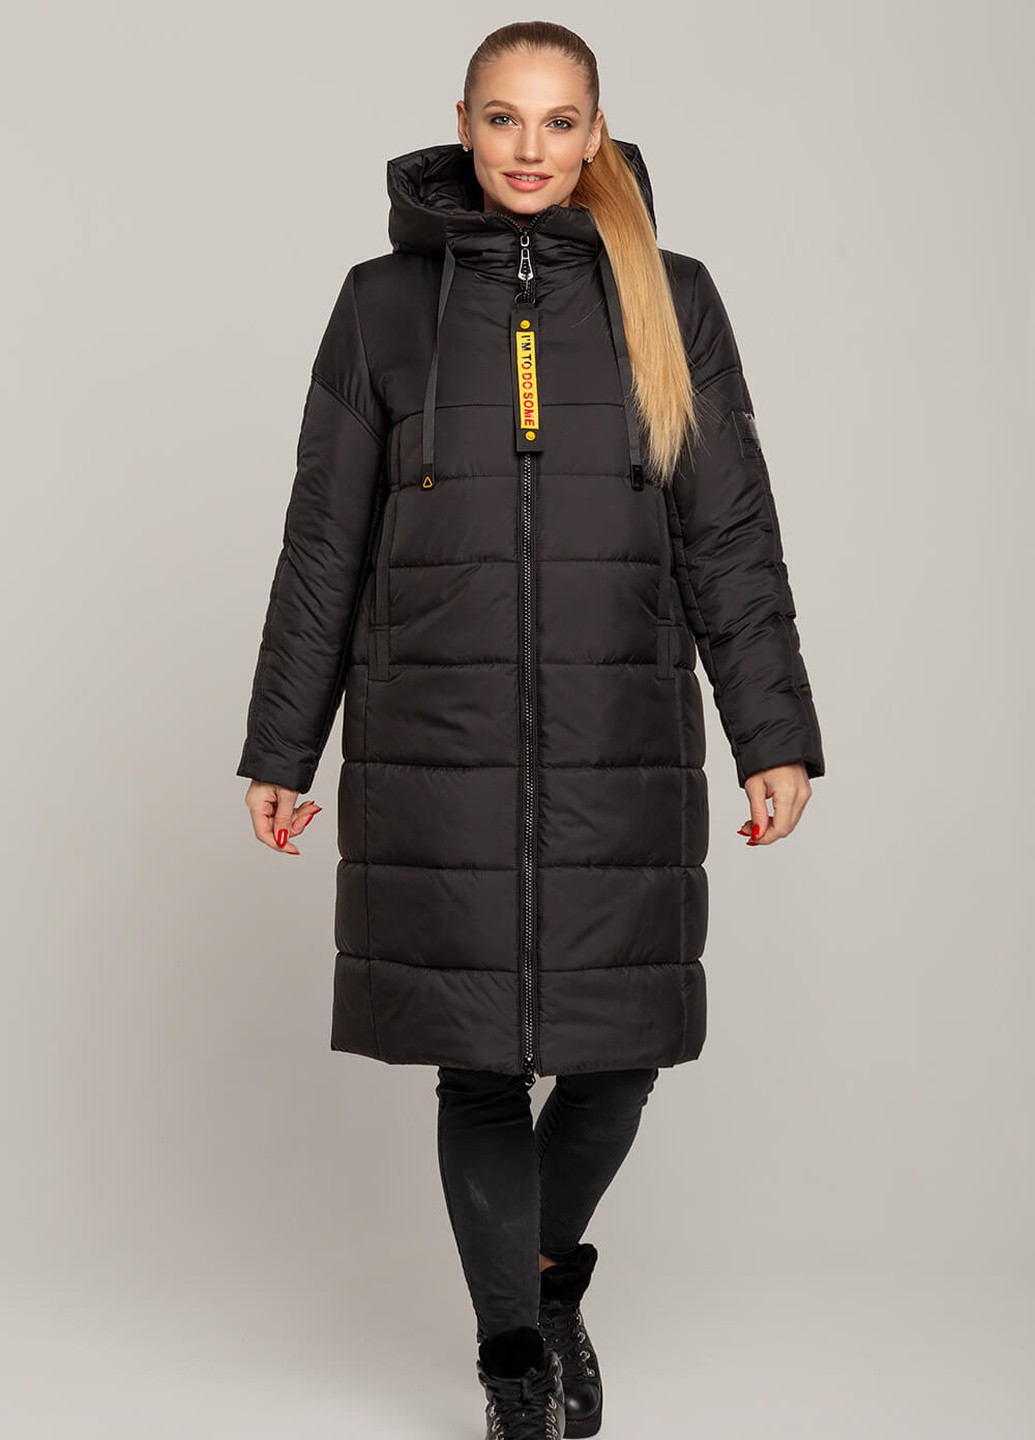 Черная зимняя куртка-пальто одри MioRichi